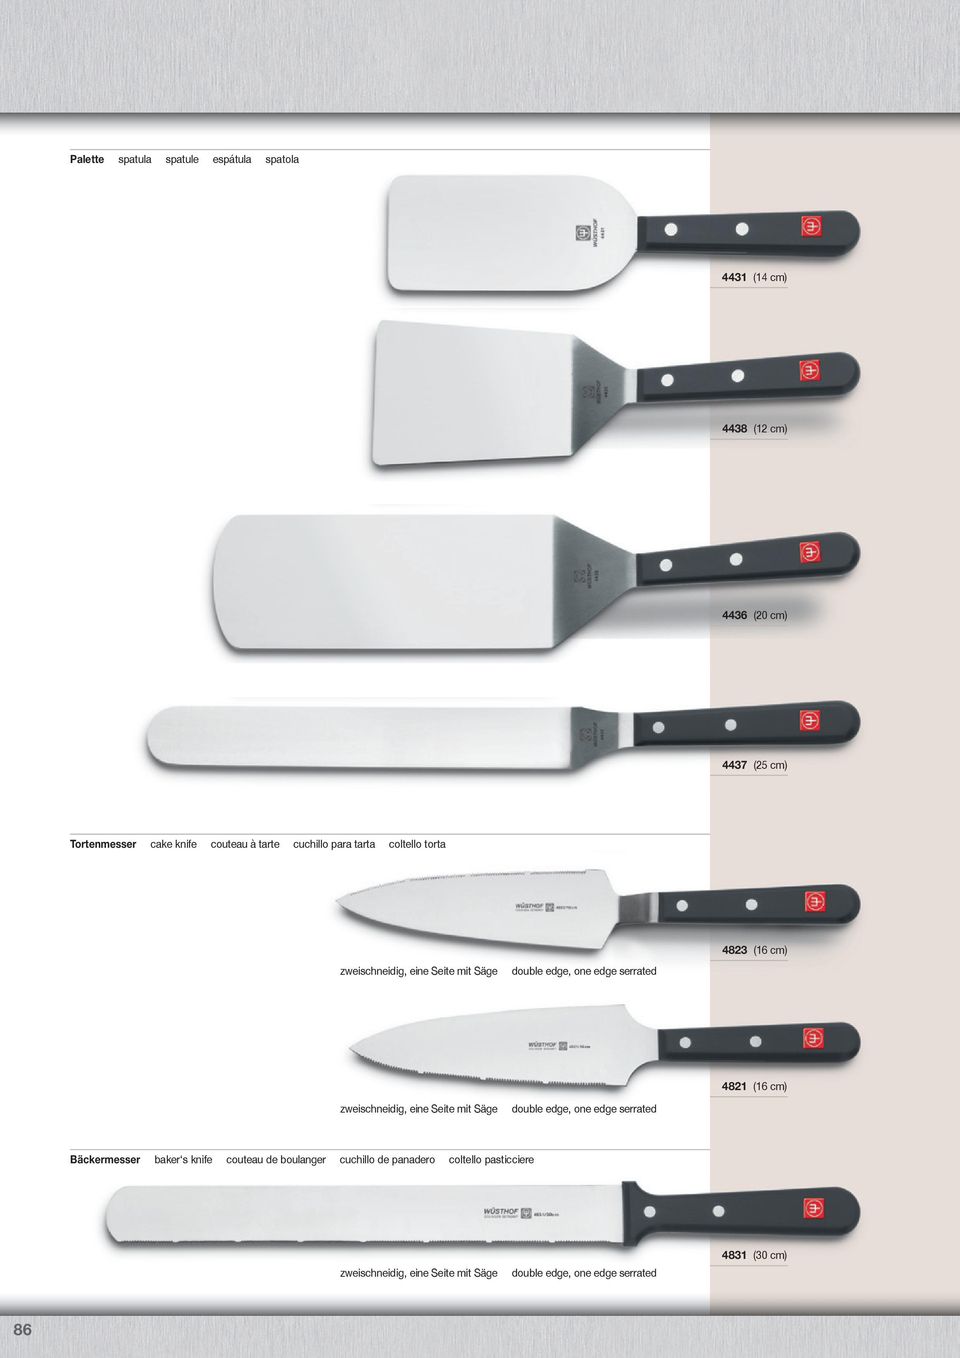 zweischneidig, eine Seite mit Säge double edge, one edge serrated 4821 (16 cm) Bäckermesser baker s knife couteau de